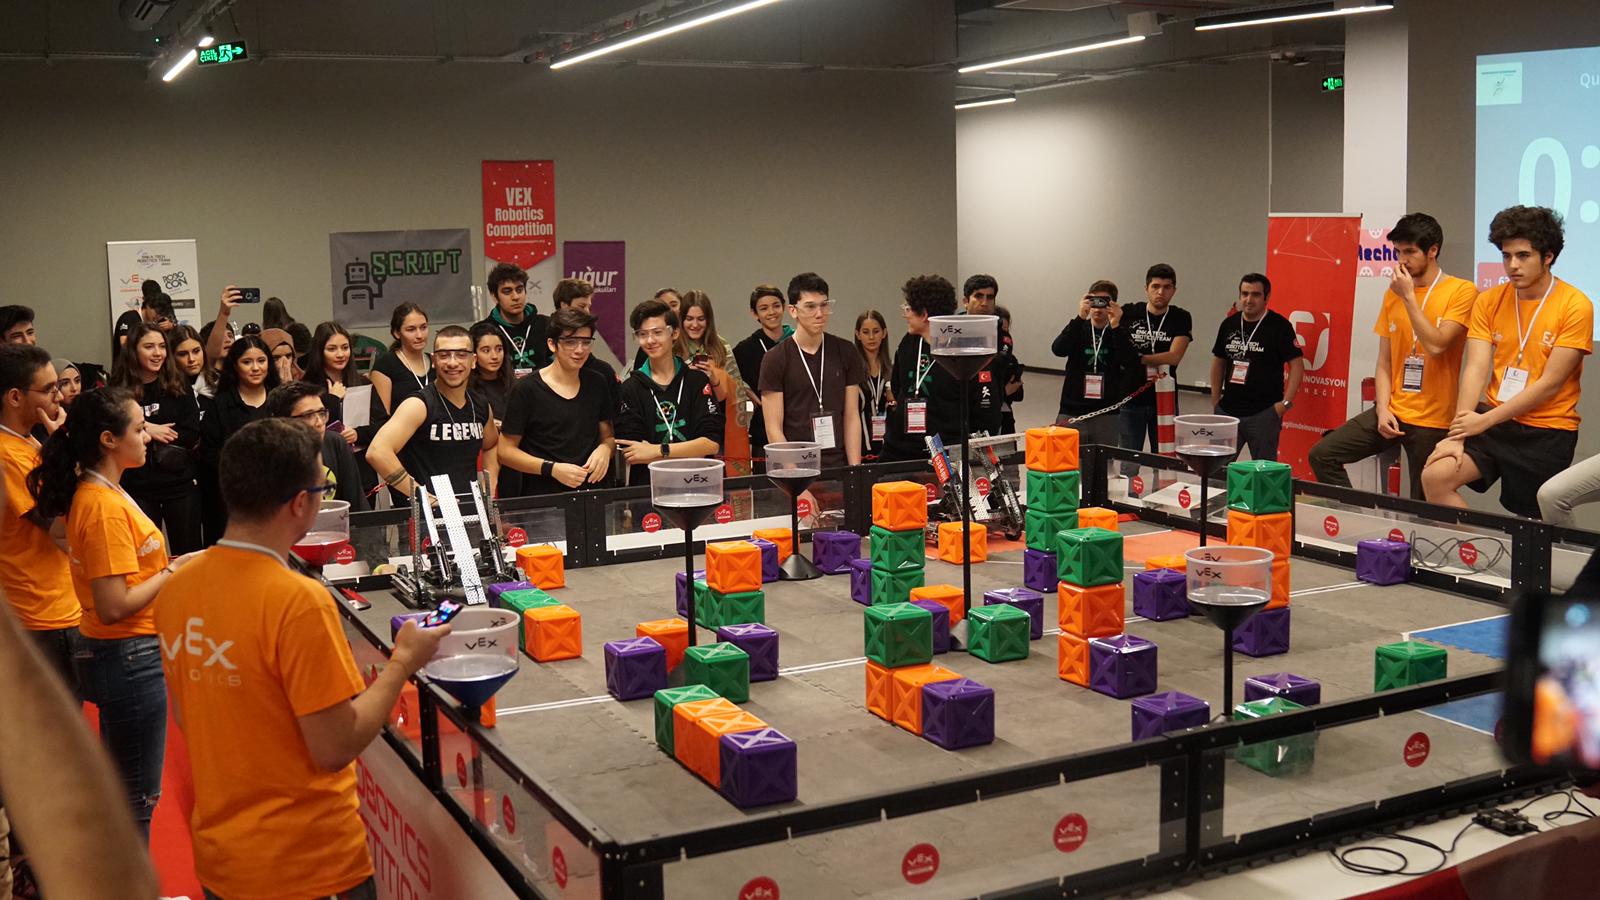 Dünyanın en büyük robotik turnuvası Nişantaşı Üniversitesi’ne konuk oldu